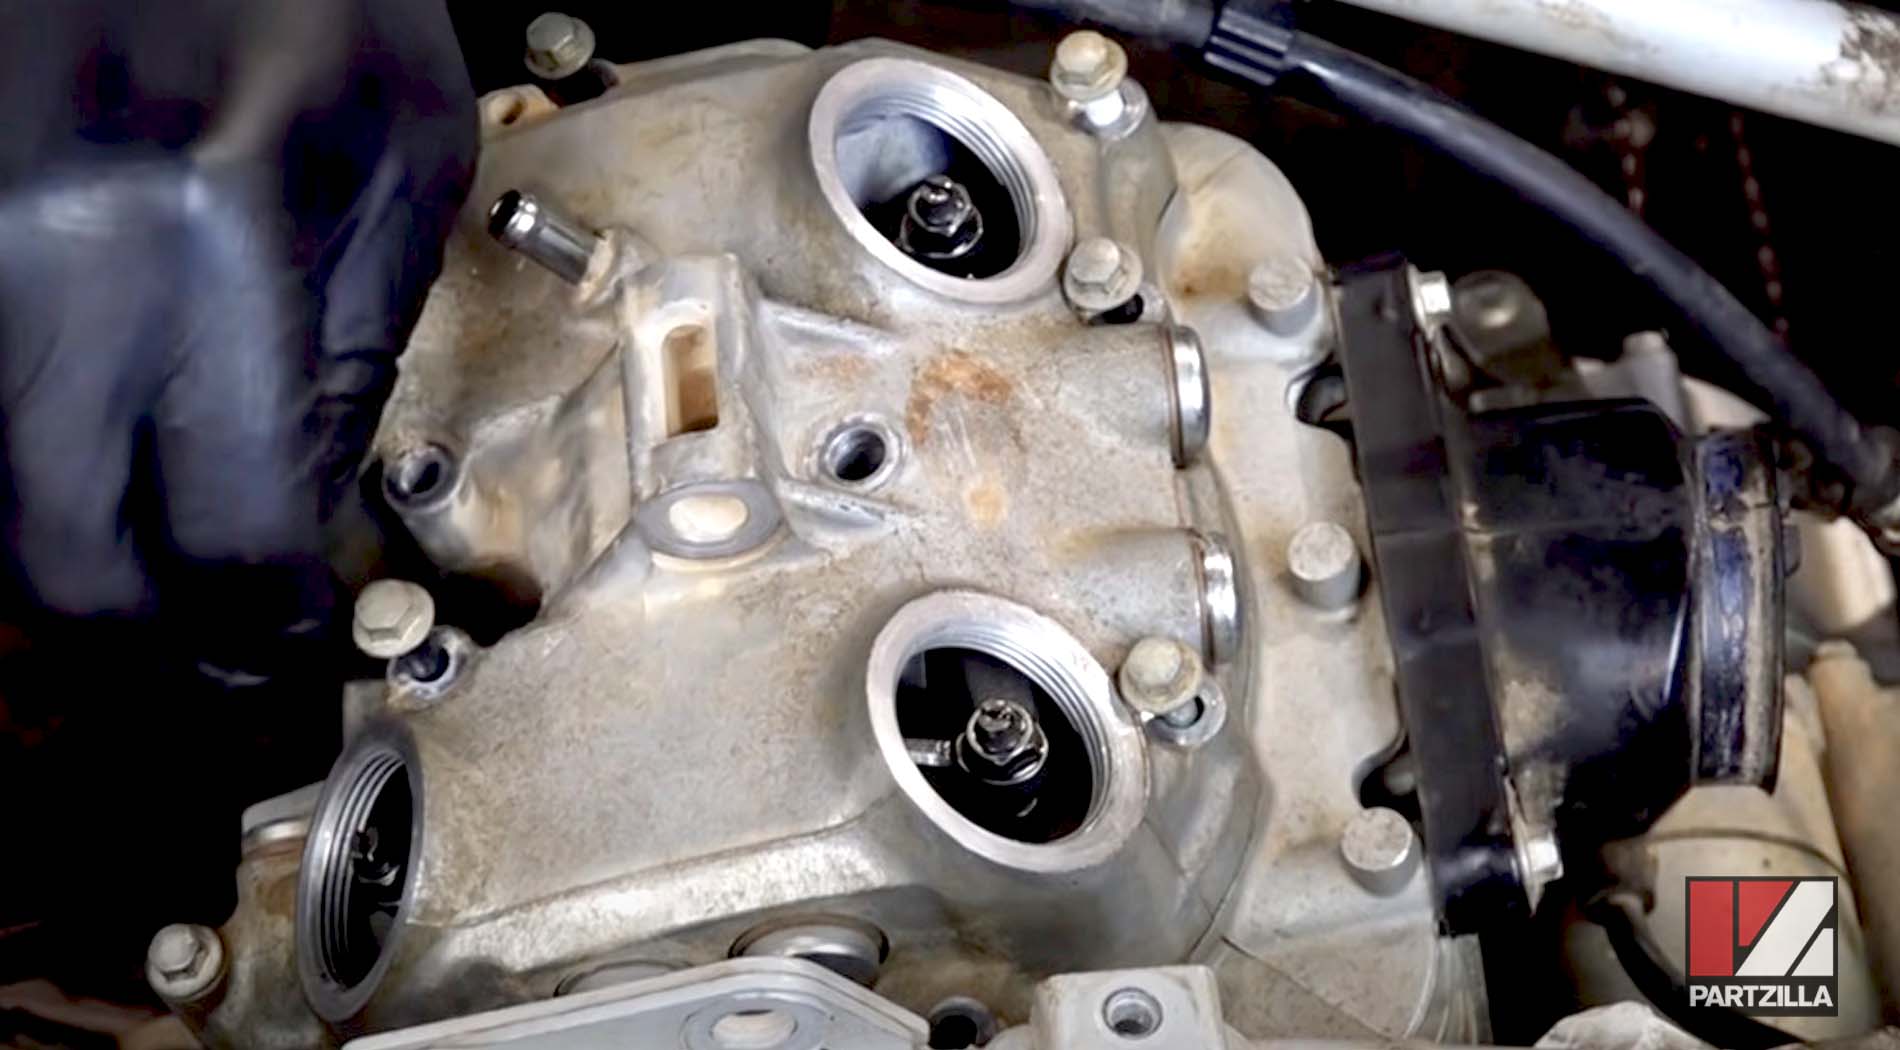 Honda TRX400 engine rebuild valve head cover